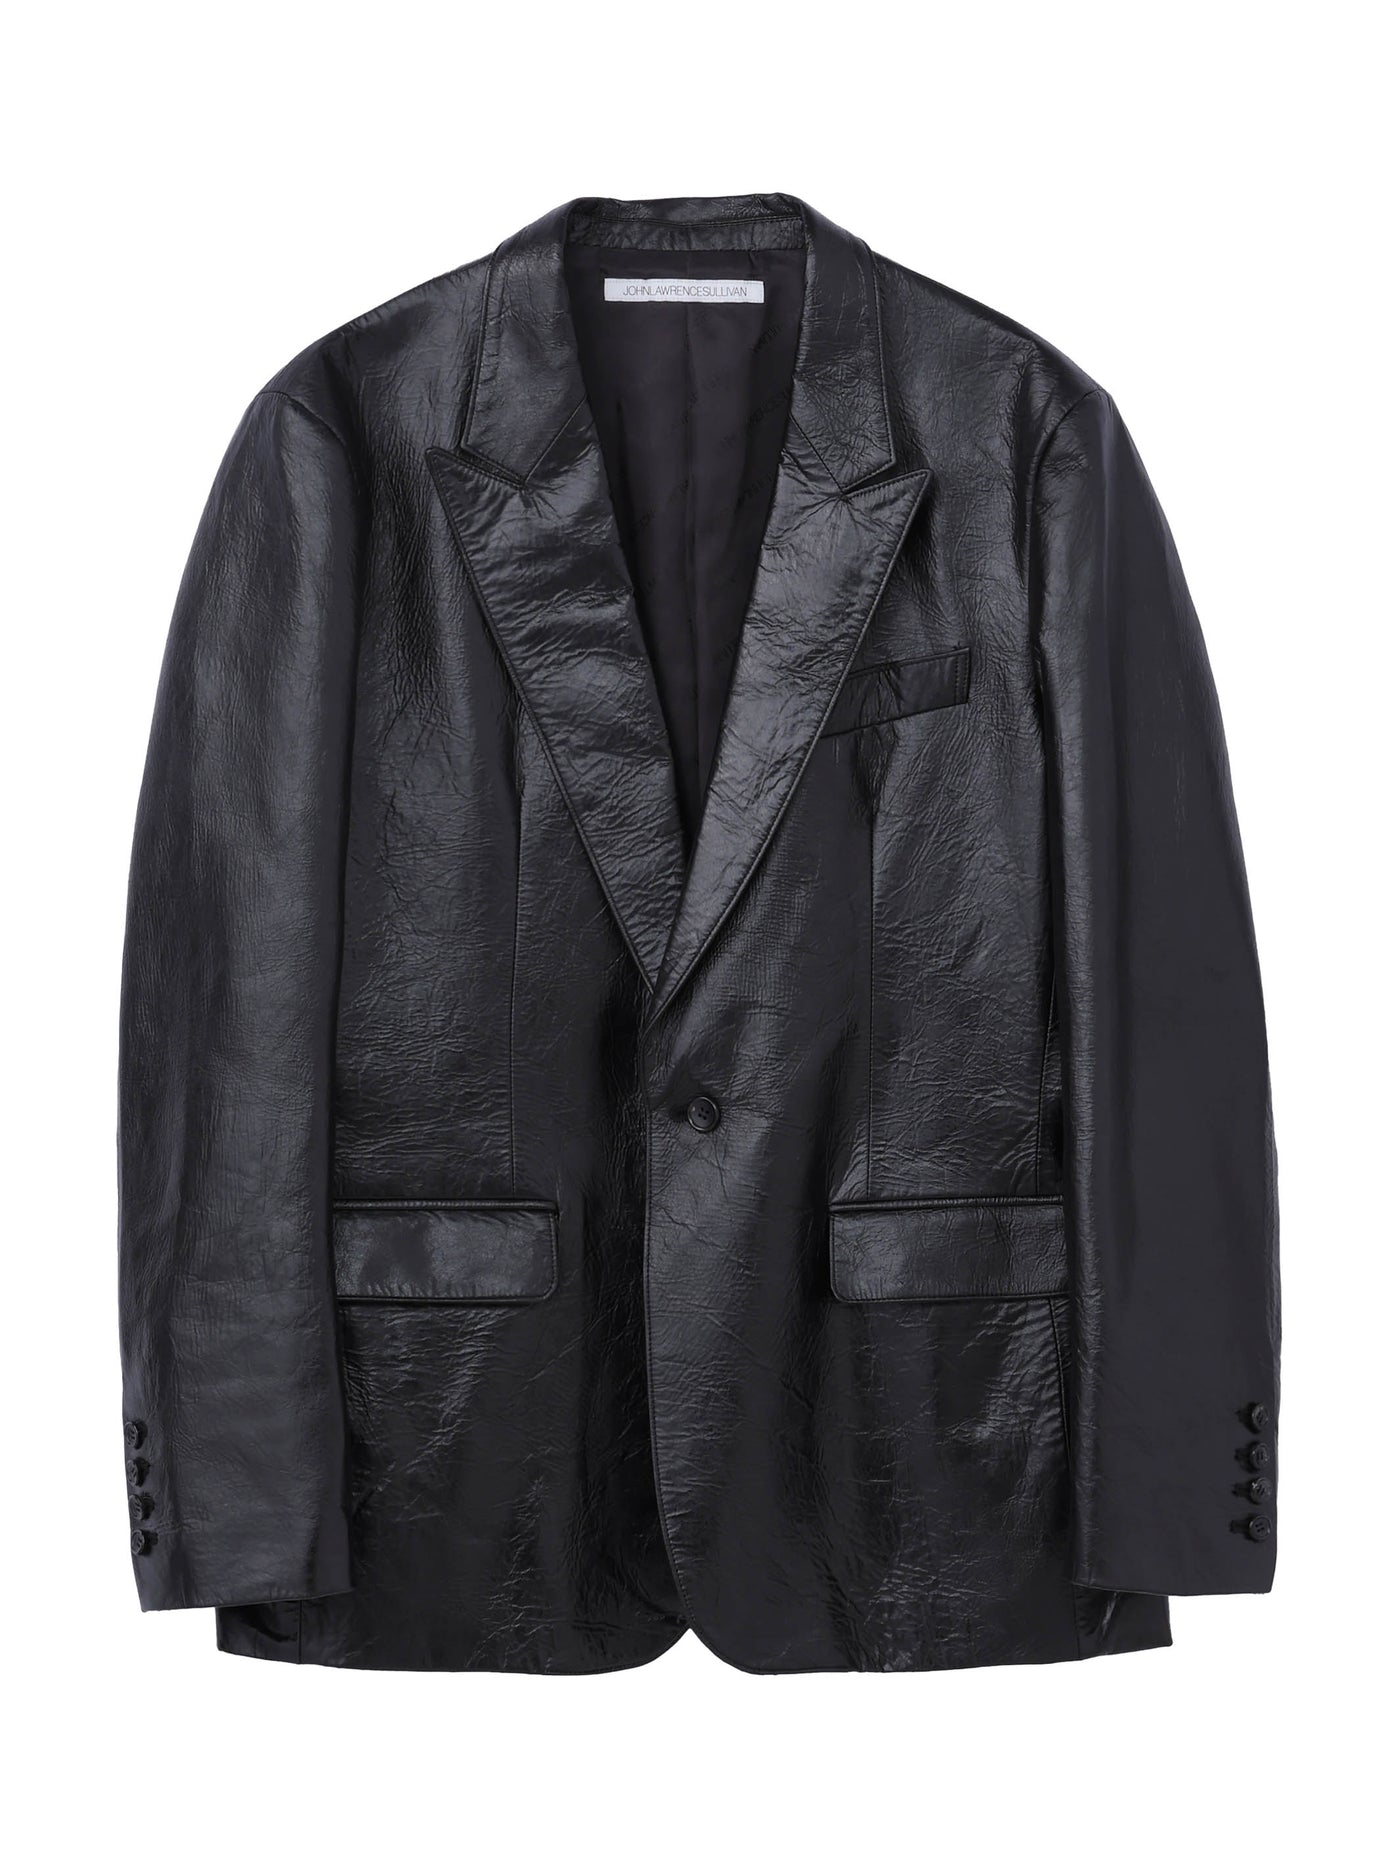 Leather single jacket